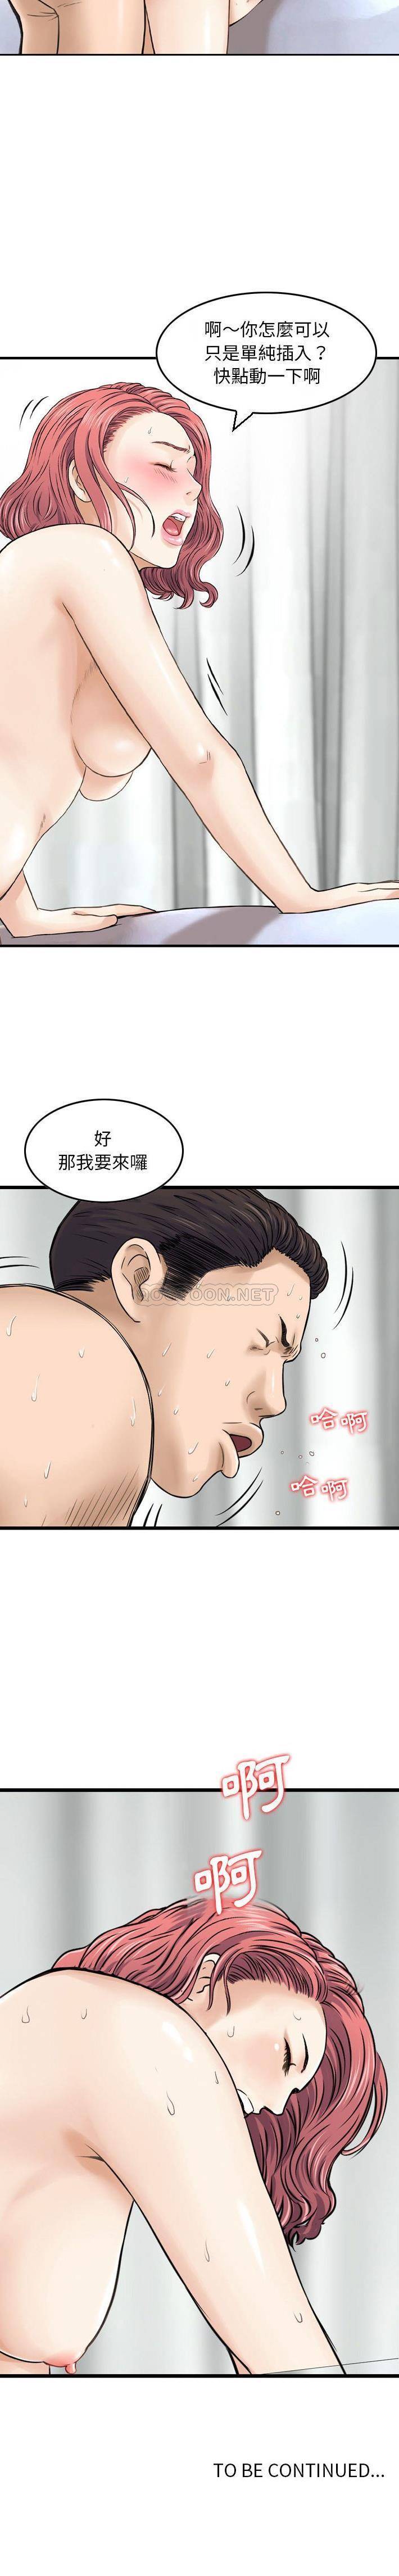 韩国污漫画 金錢的魅力 第11话 16